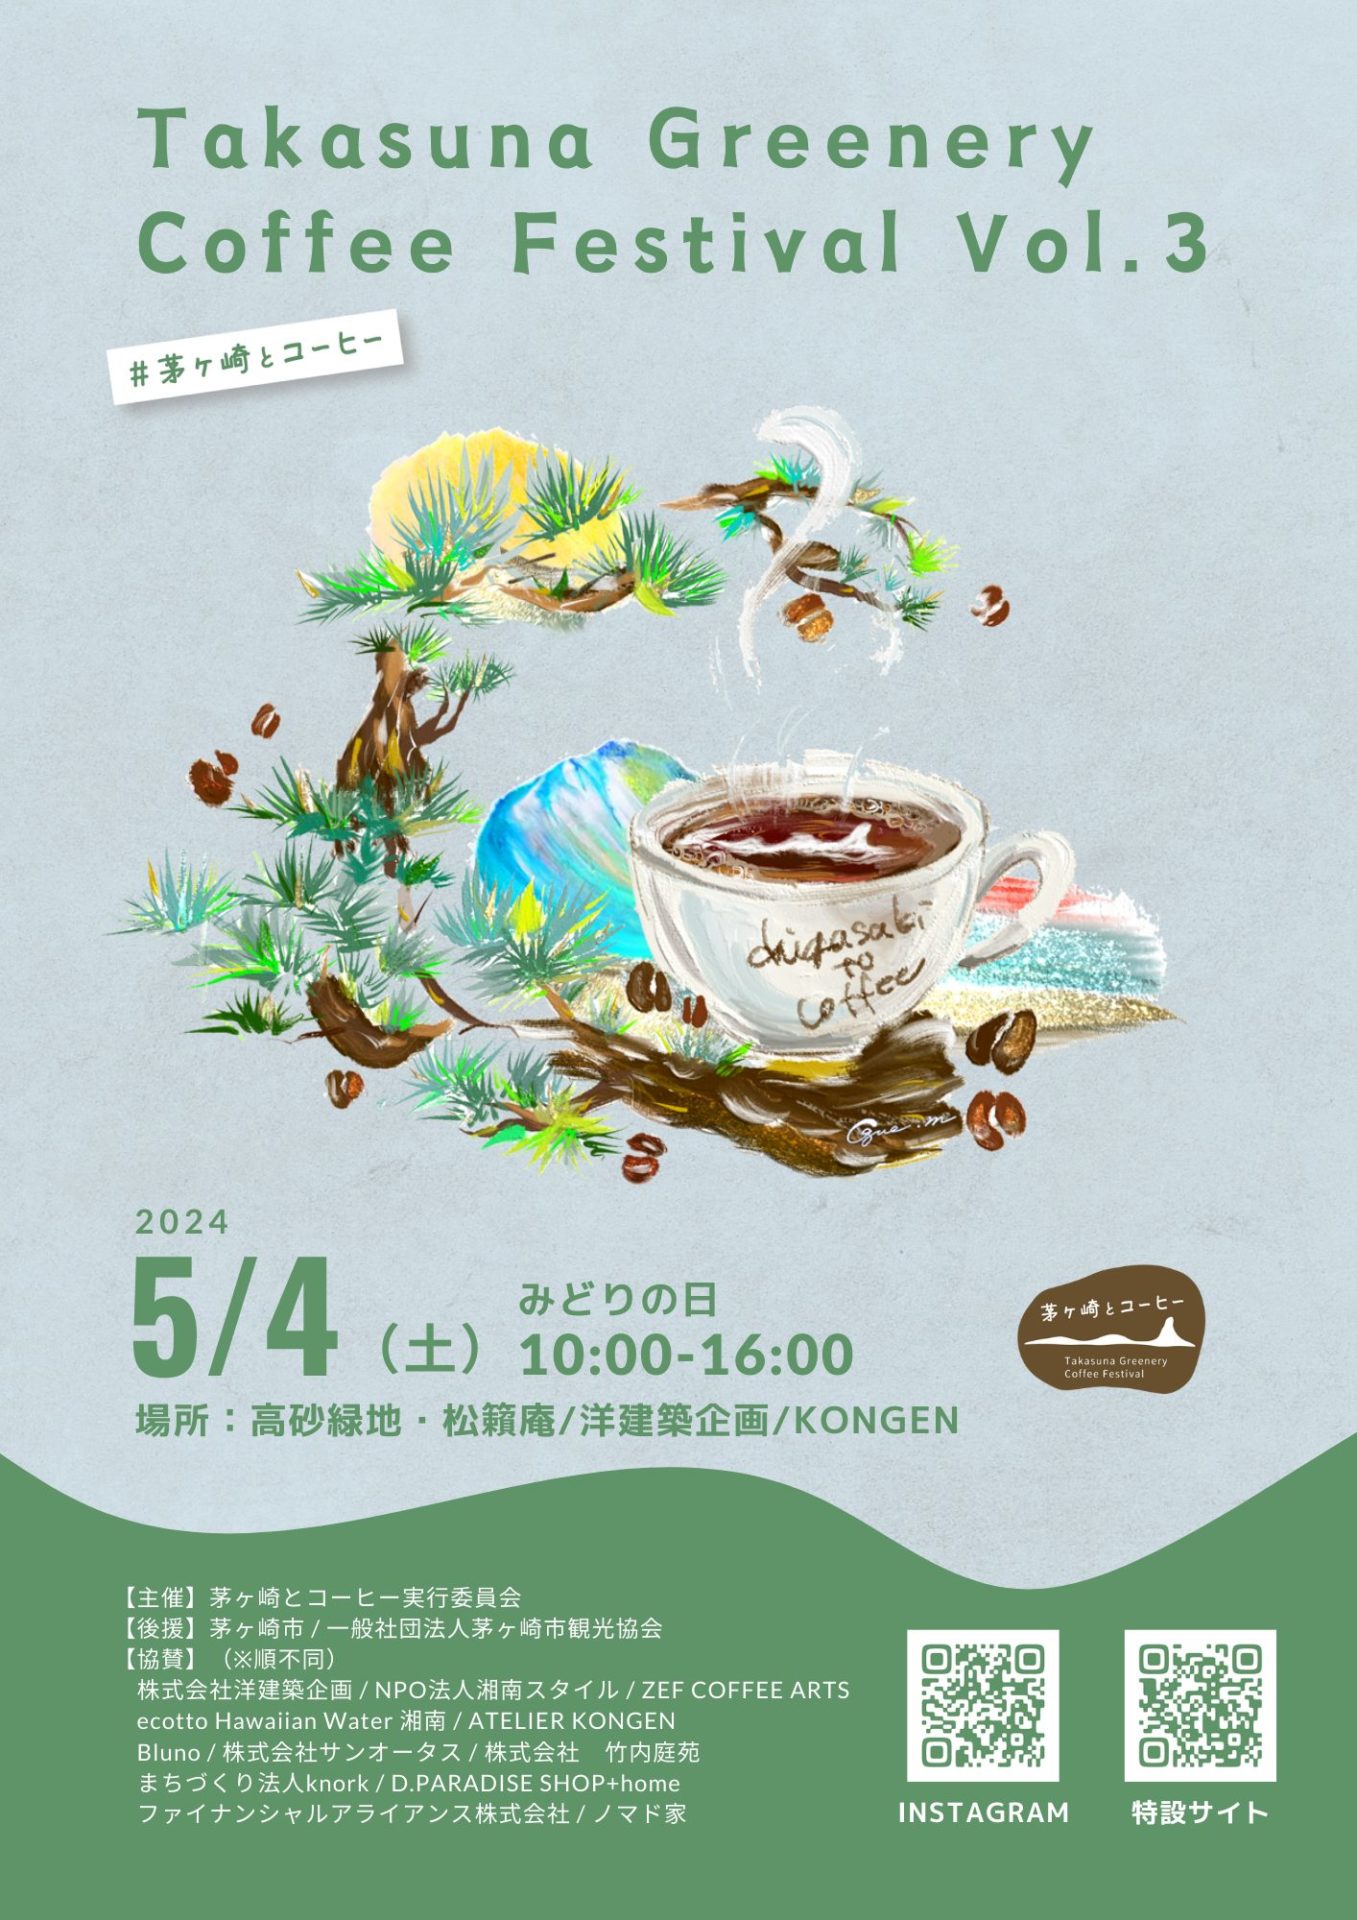 【茅ヶ崎市】分散型のまち歩きコーヒーフェス「Takasuna Greenery Coffee Festival vol.3」を開催！5月4日(土)